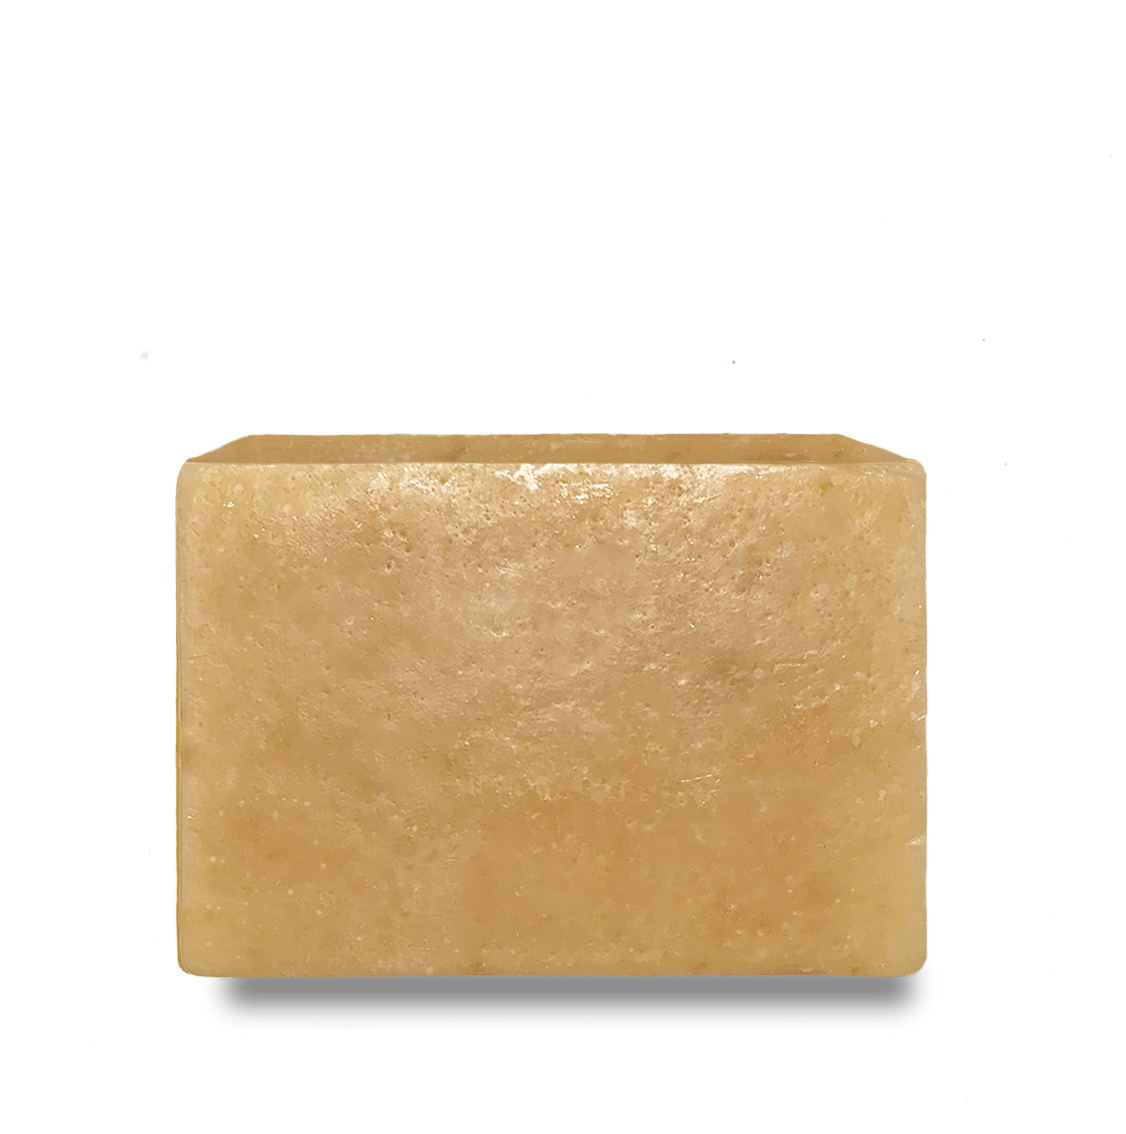 Tamarind  Soap Bar - Radiant Crush